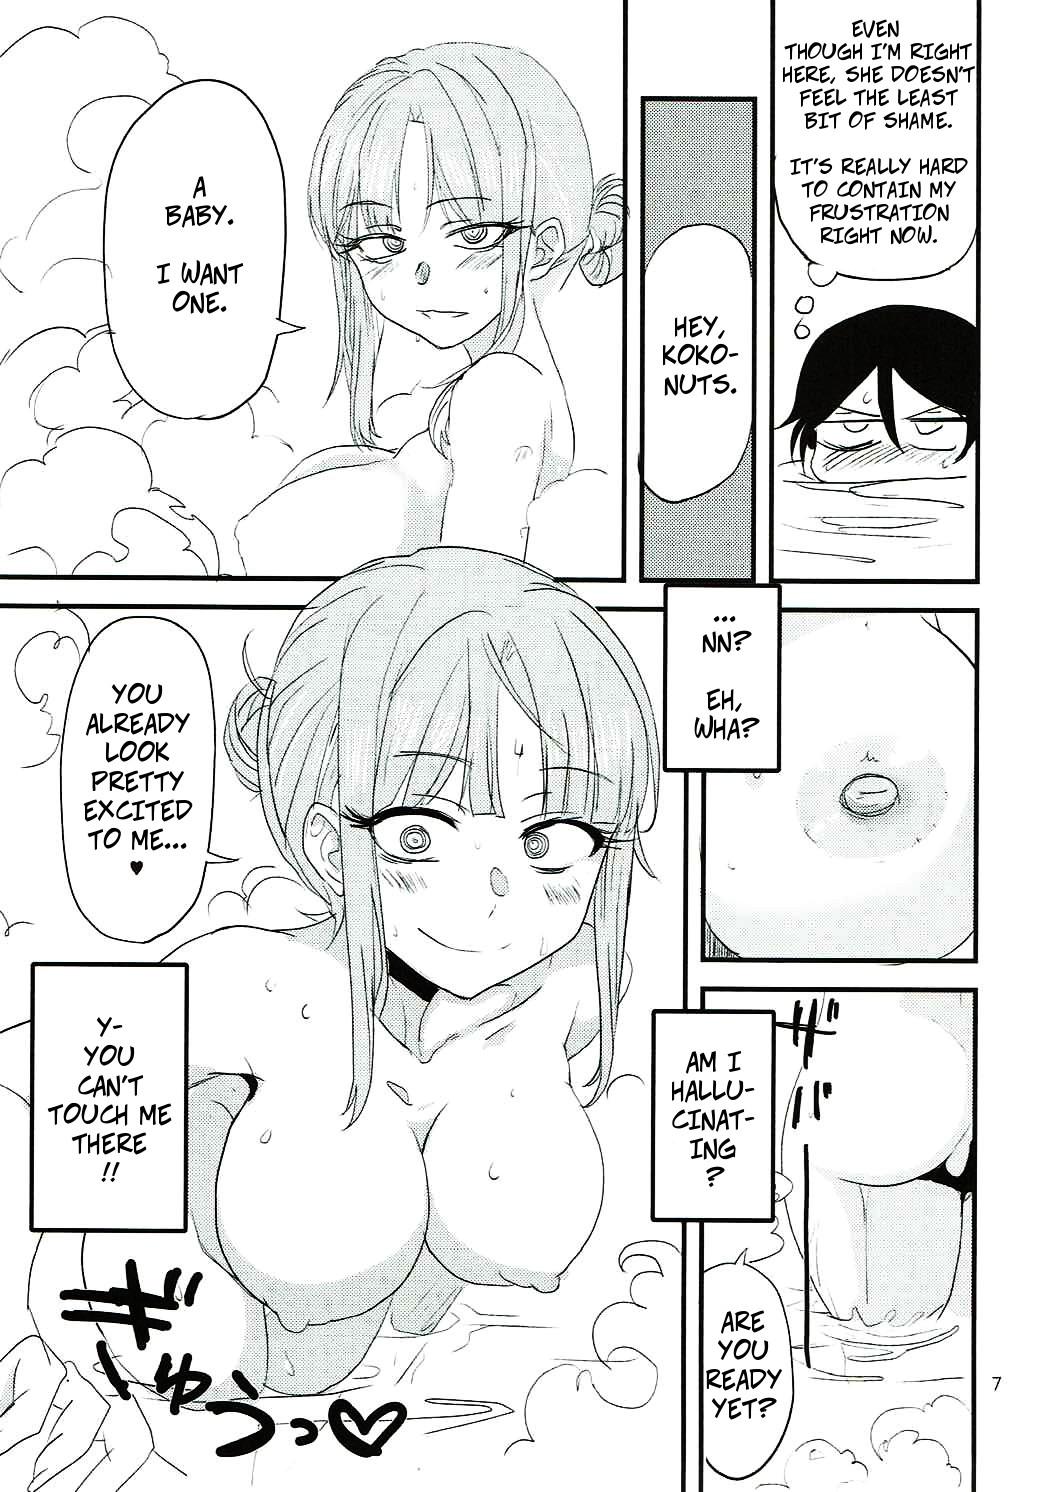 Sexy Whores Dagashi Chichi 6 - Dagashi kashi Women - Page 6